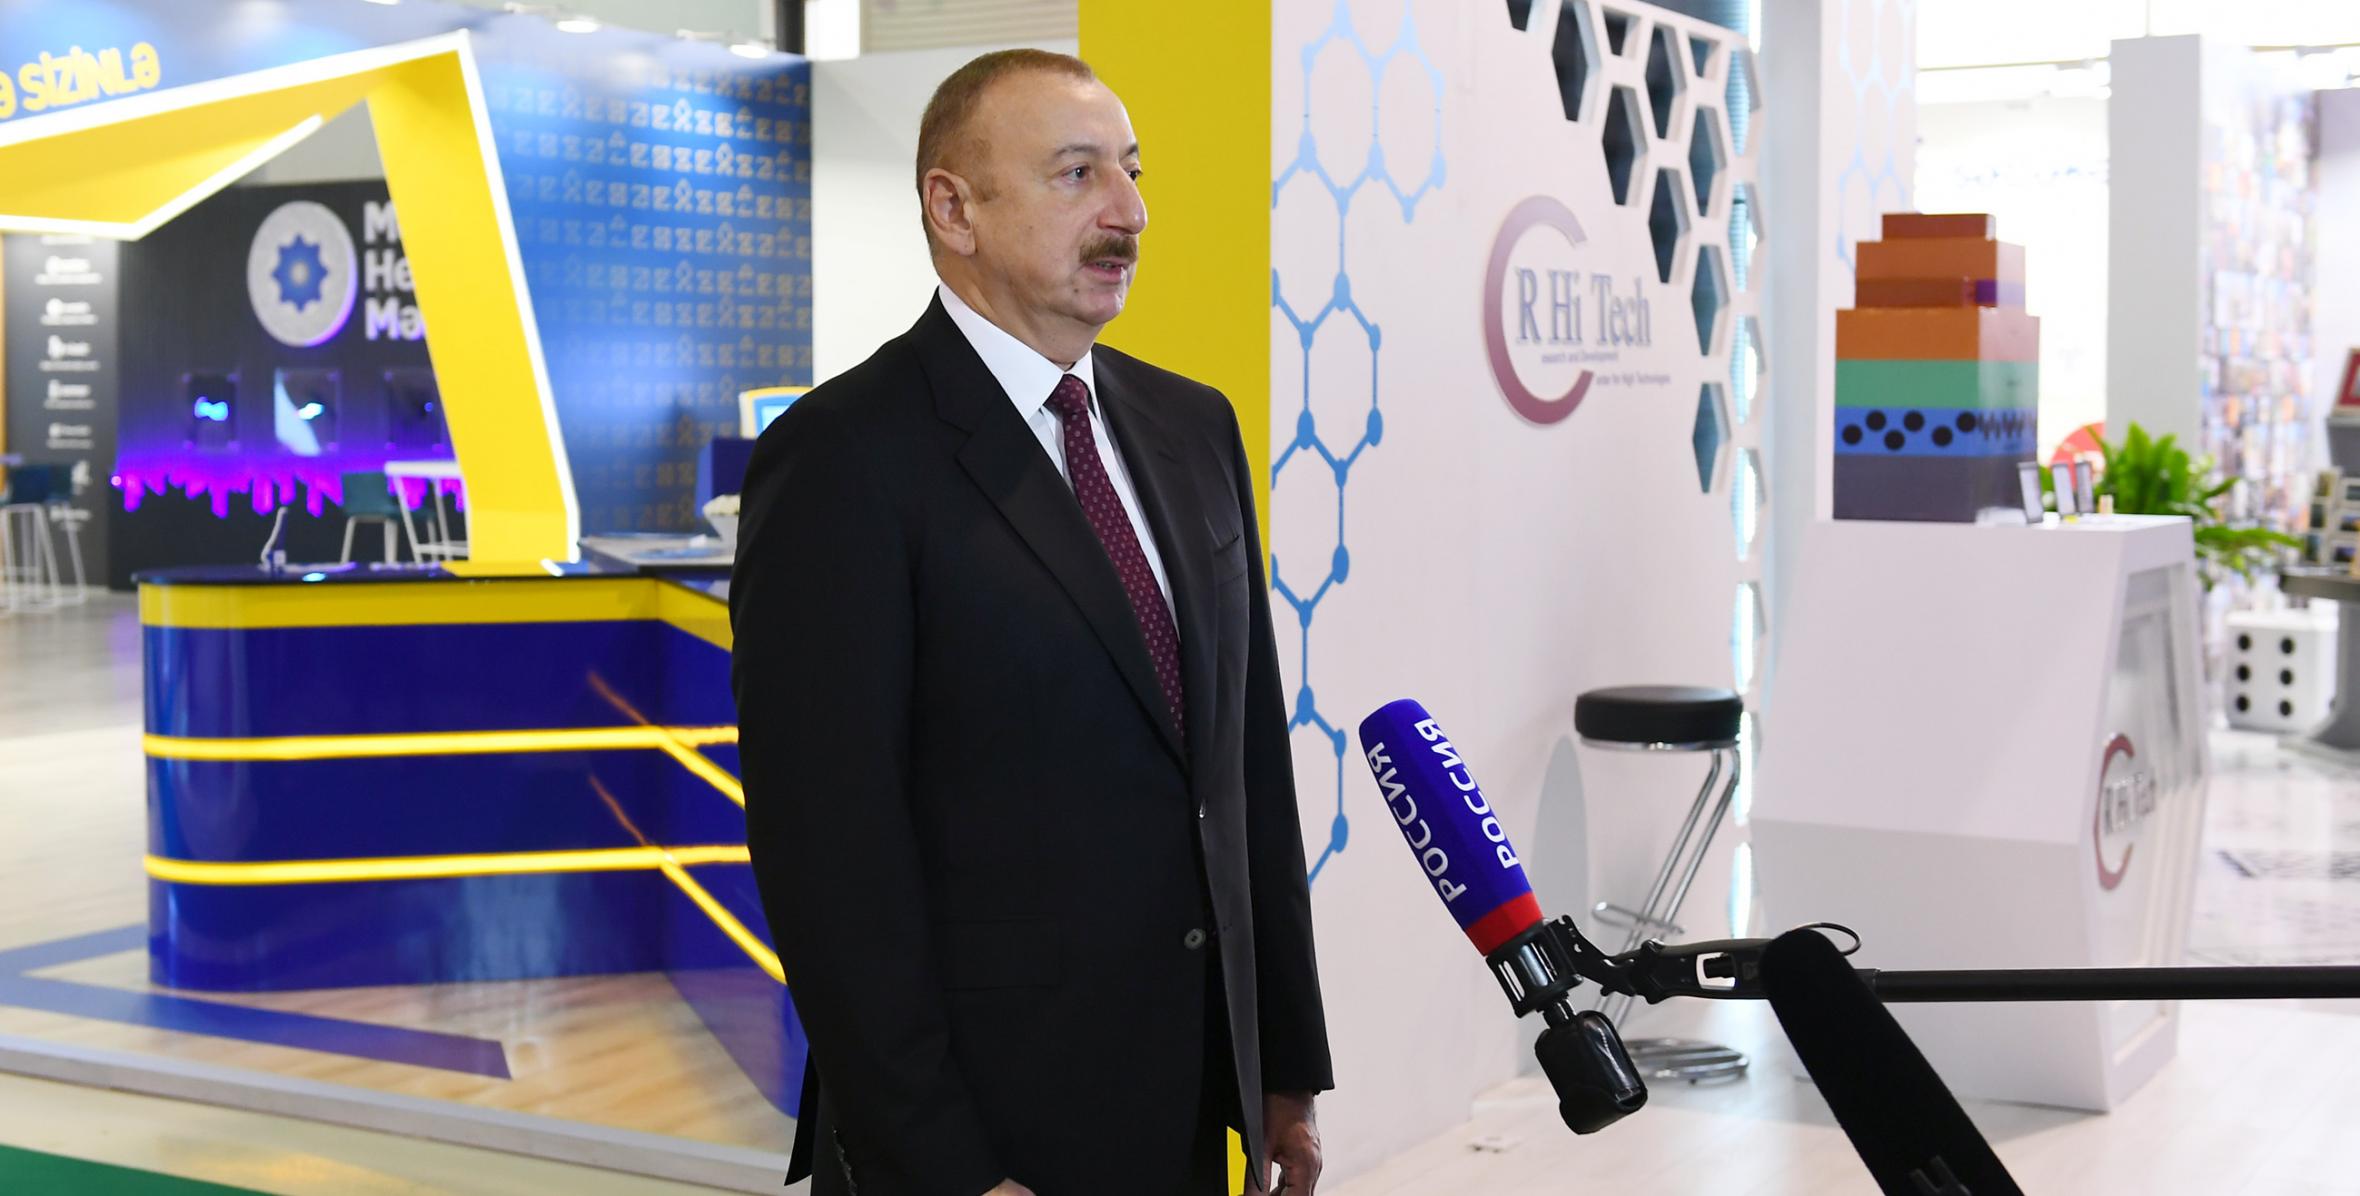 İlham Əliyev “Bakutel-2019” sərgisində Rusiyanın “Rossiya 24” televiziya kanalına müsahibə verib